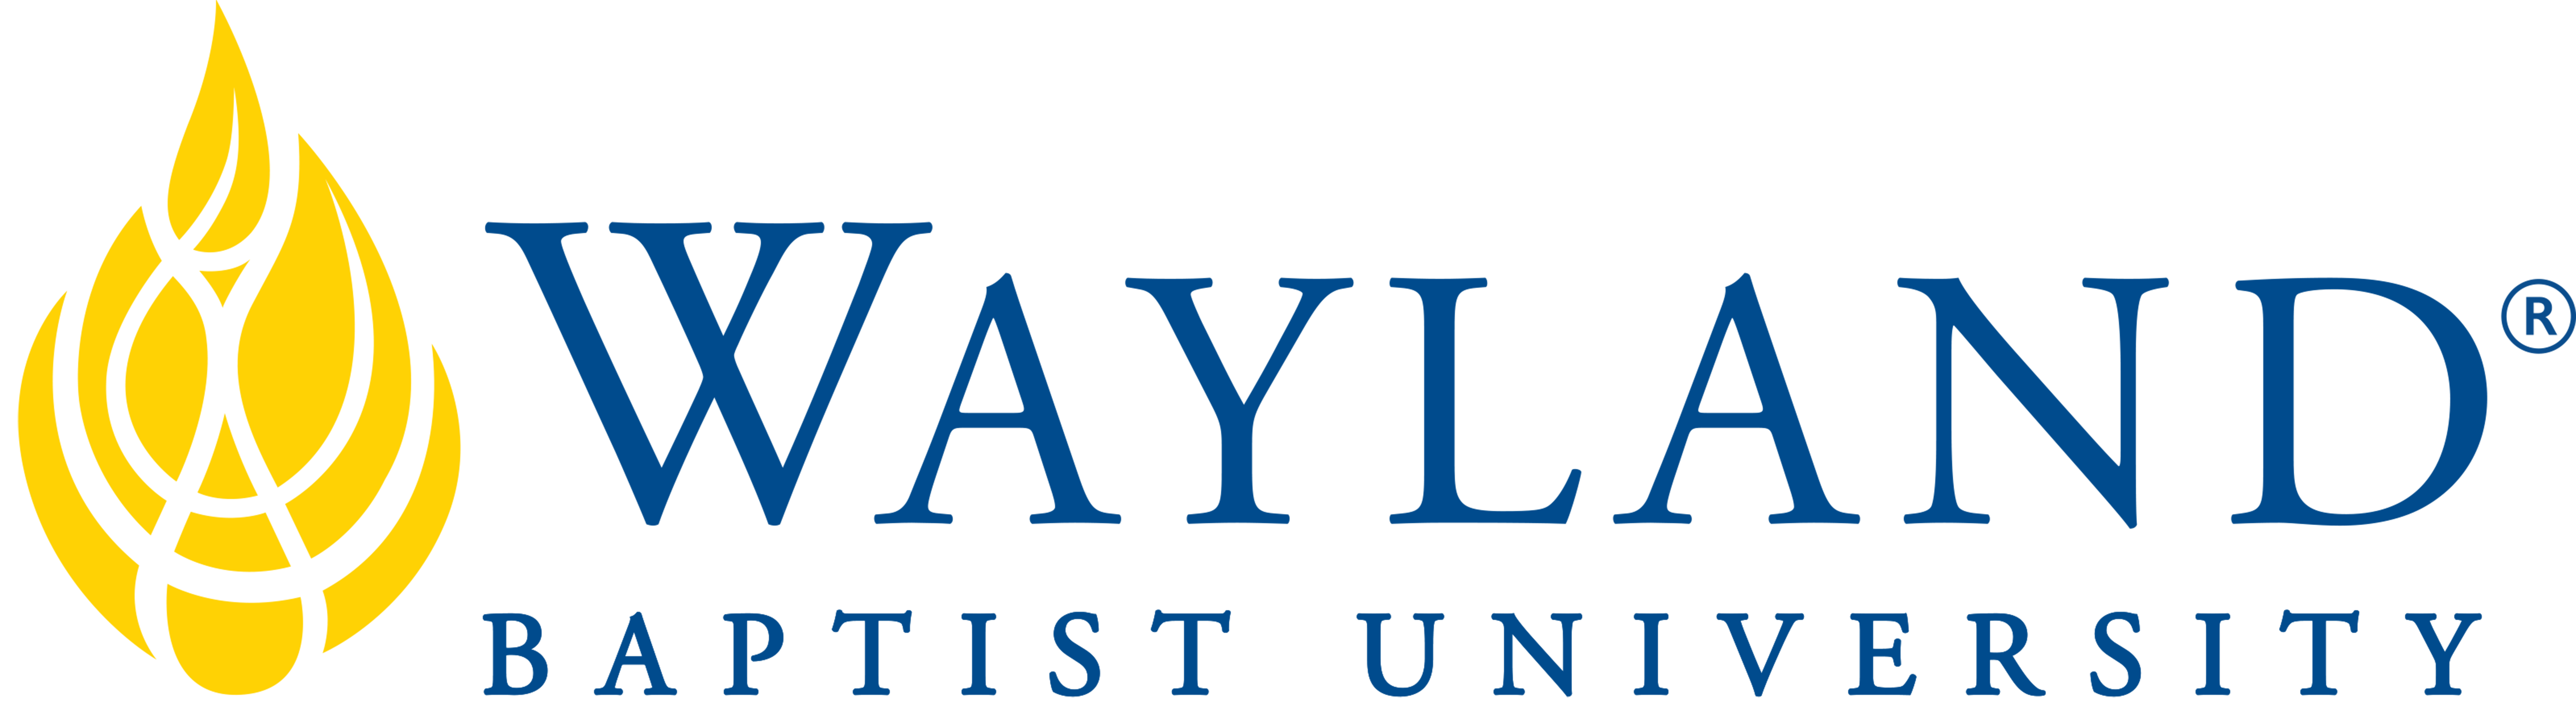 Wayland Baptist University Lubbock logo